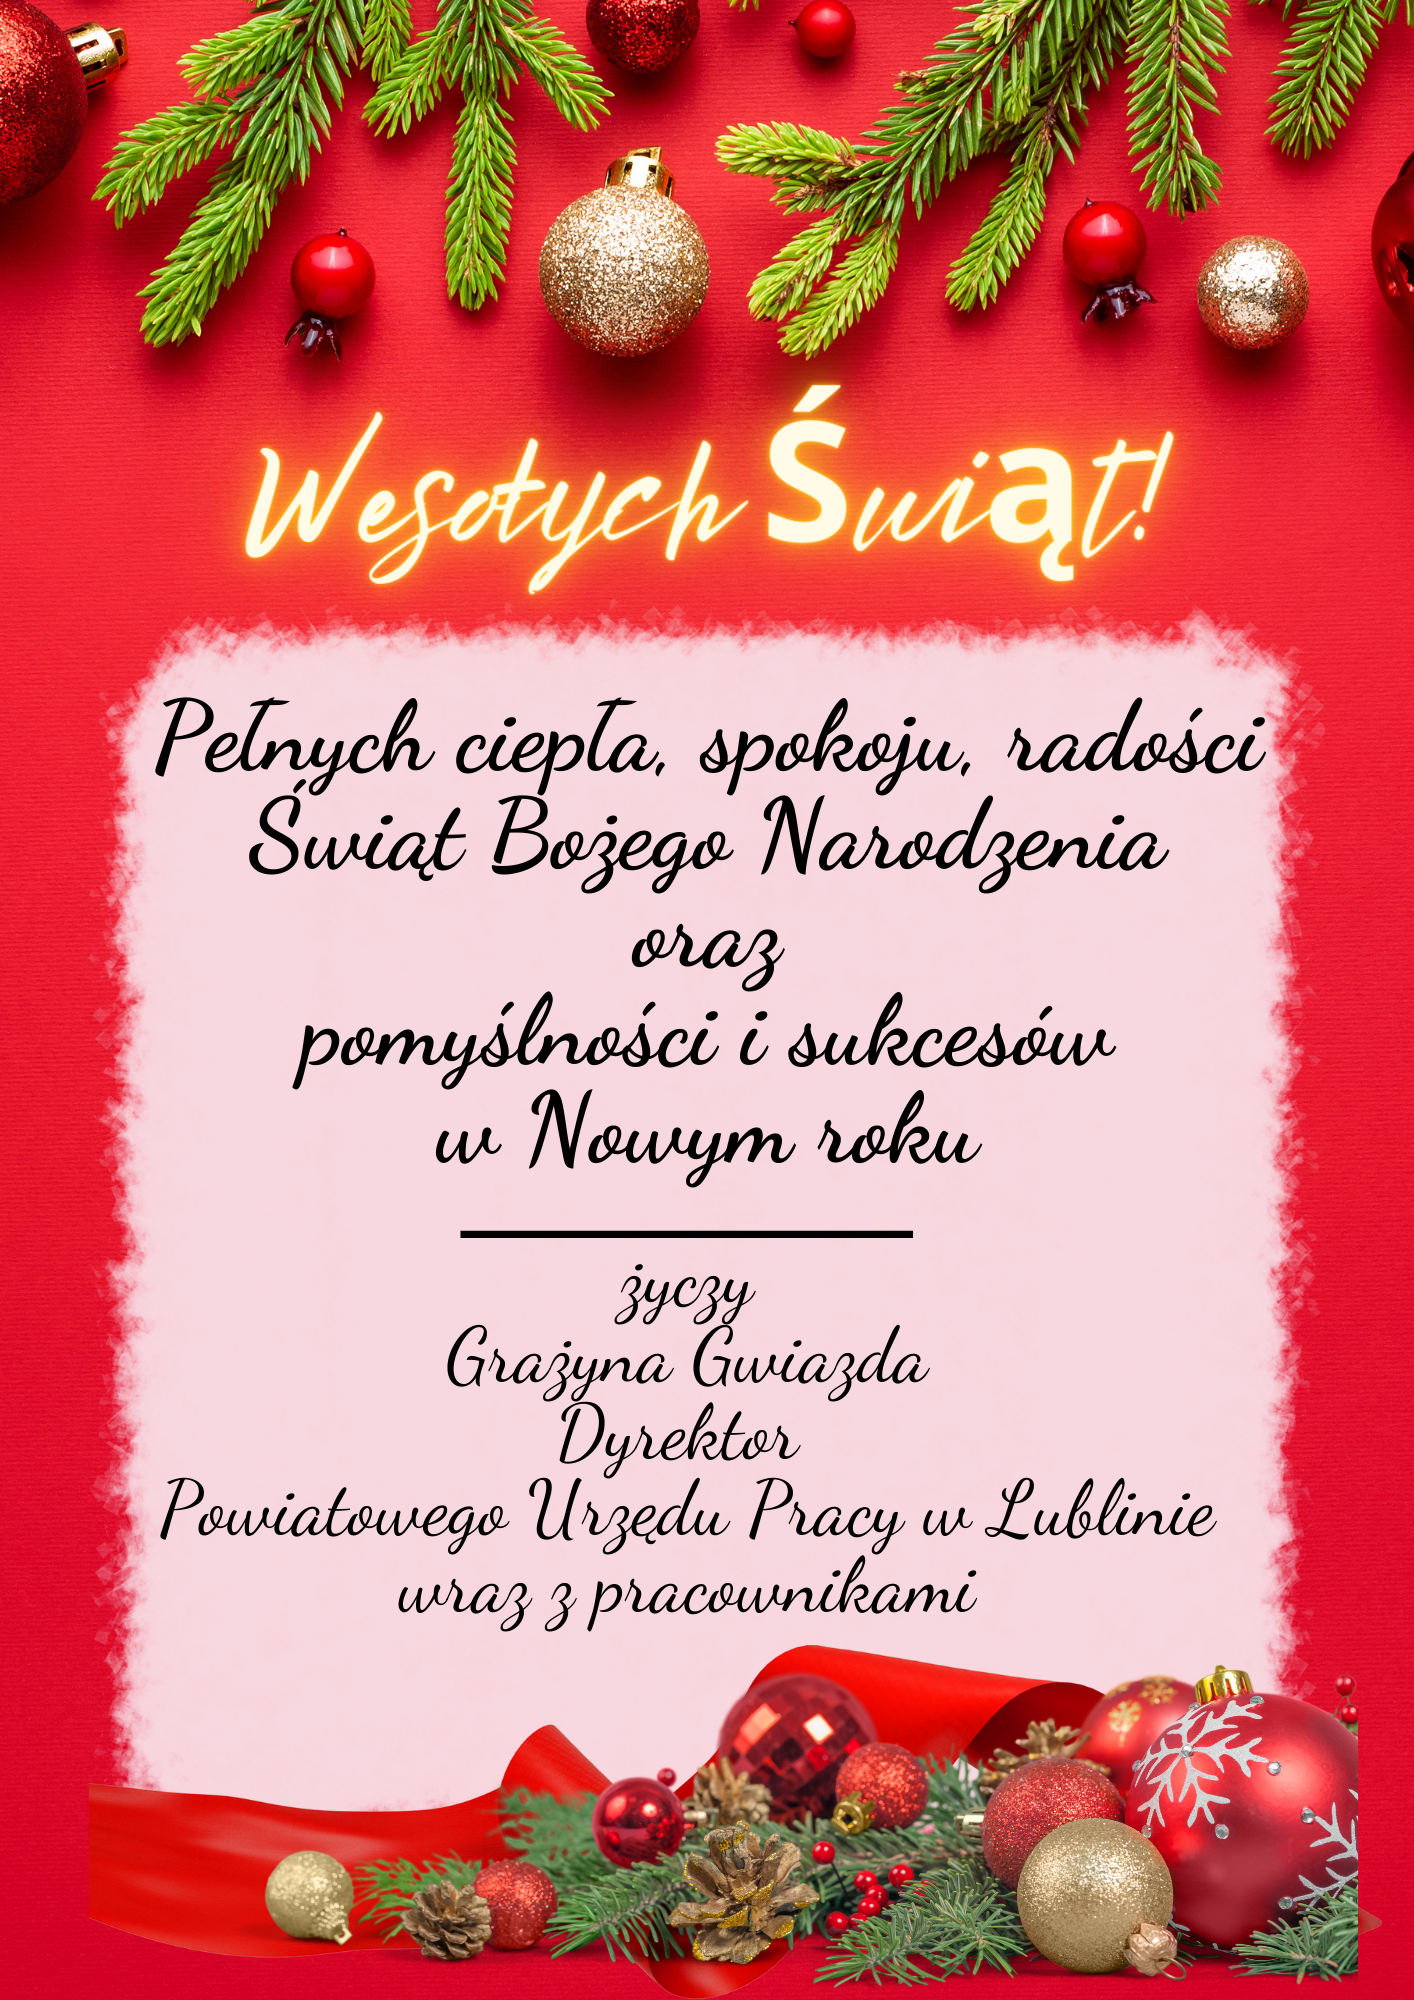 Wesołych Świąt!
Pełnych ciepła, spokoju, radości
Świąt Bożego Narodzenia
oraz
pomyślności i sukcesów
w Nowym roku
życzy
Grażyna Gwiazda
Dyrektor
Powiatowgo Urzędu Pracy w Lublinie
wraz z pracownikami